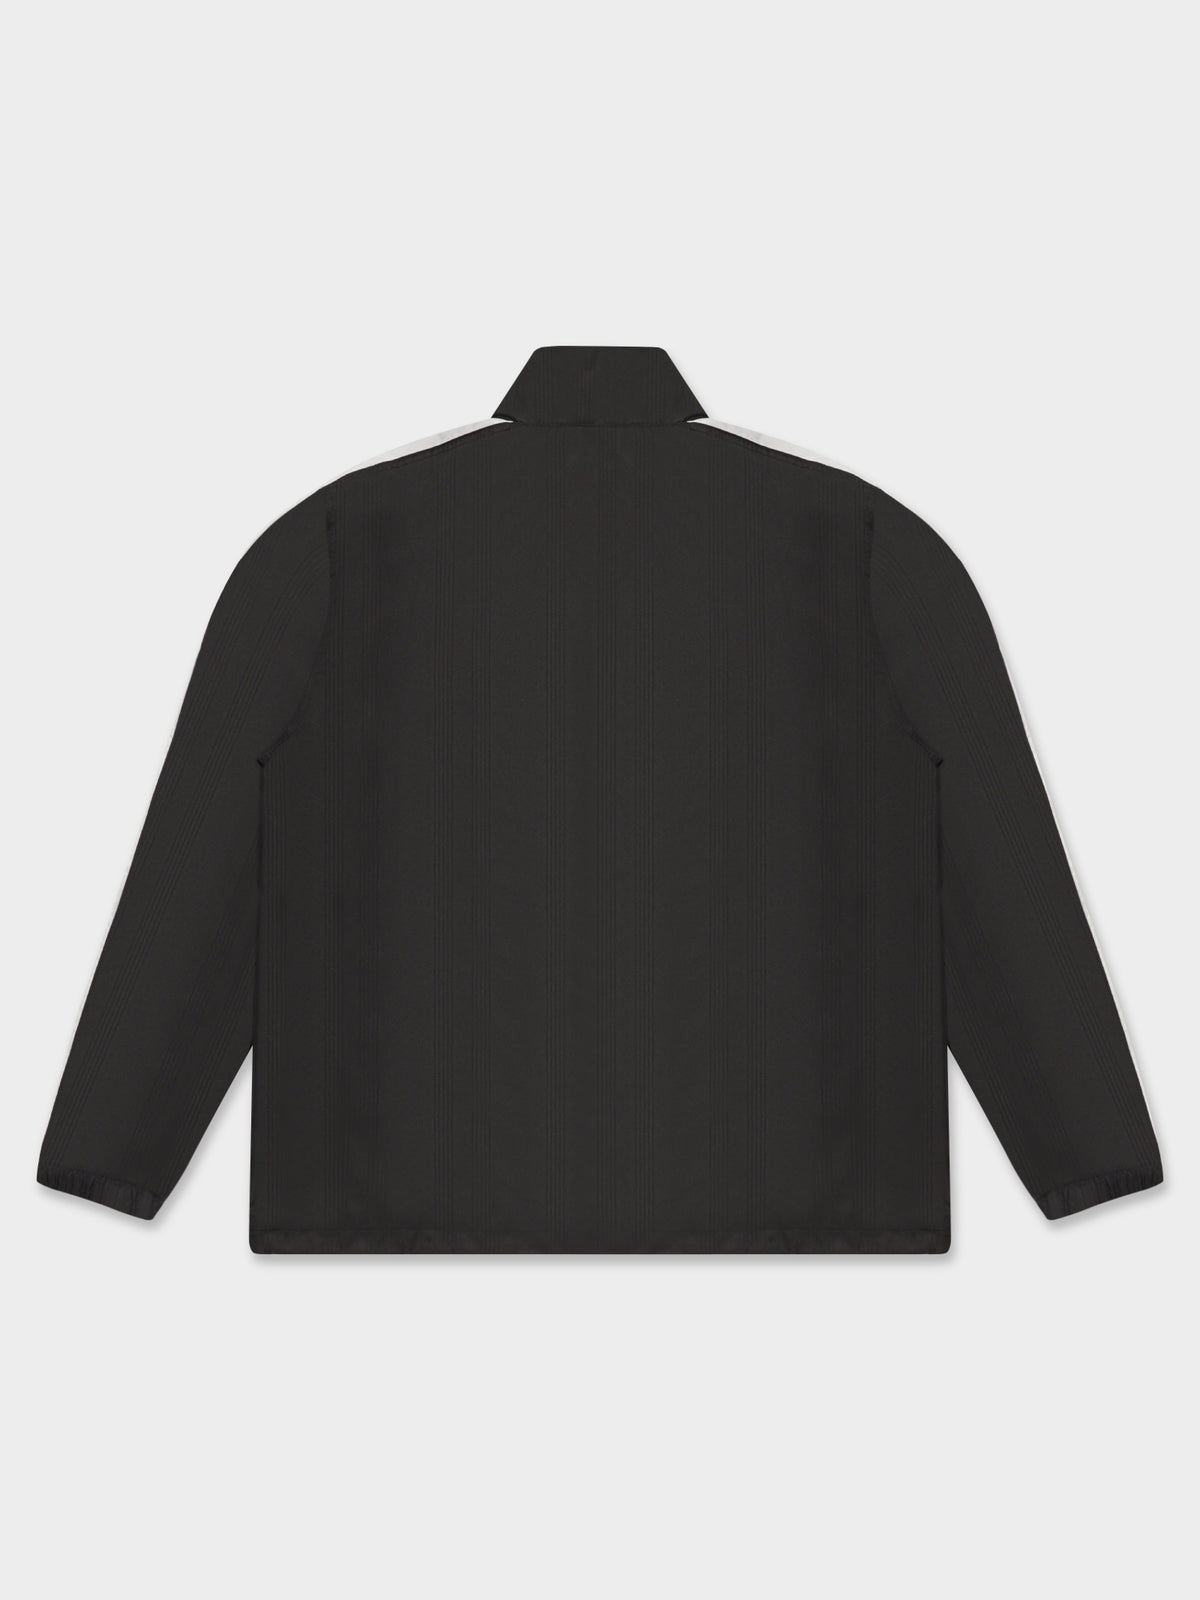 T7 Fandom Jacket in Black